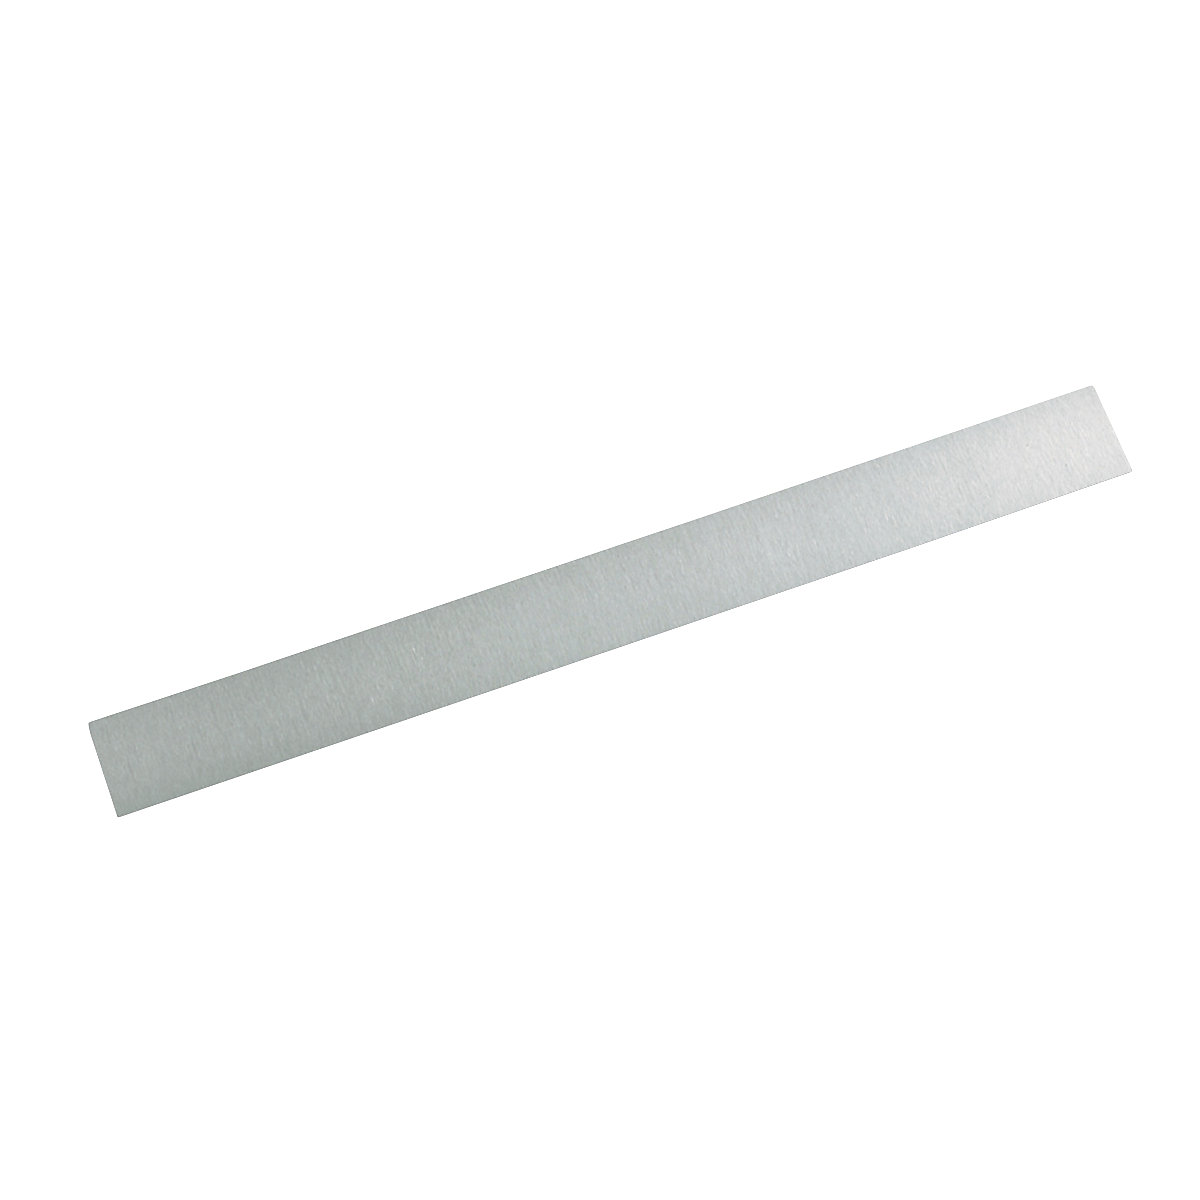 Barre métallique – MAUL, largeur 50 mm, longueur 500 mm, lot de 10-1